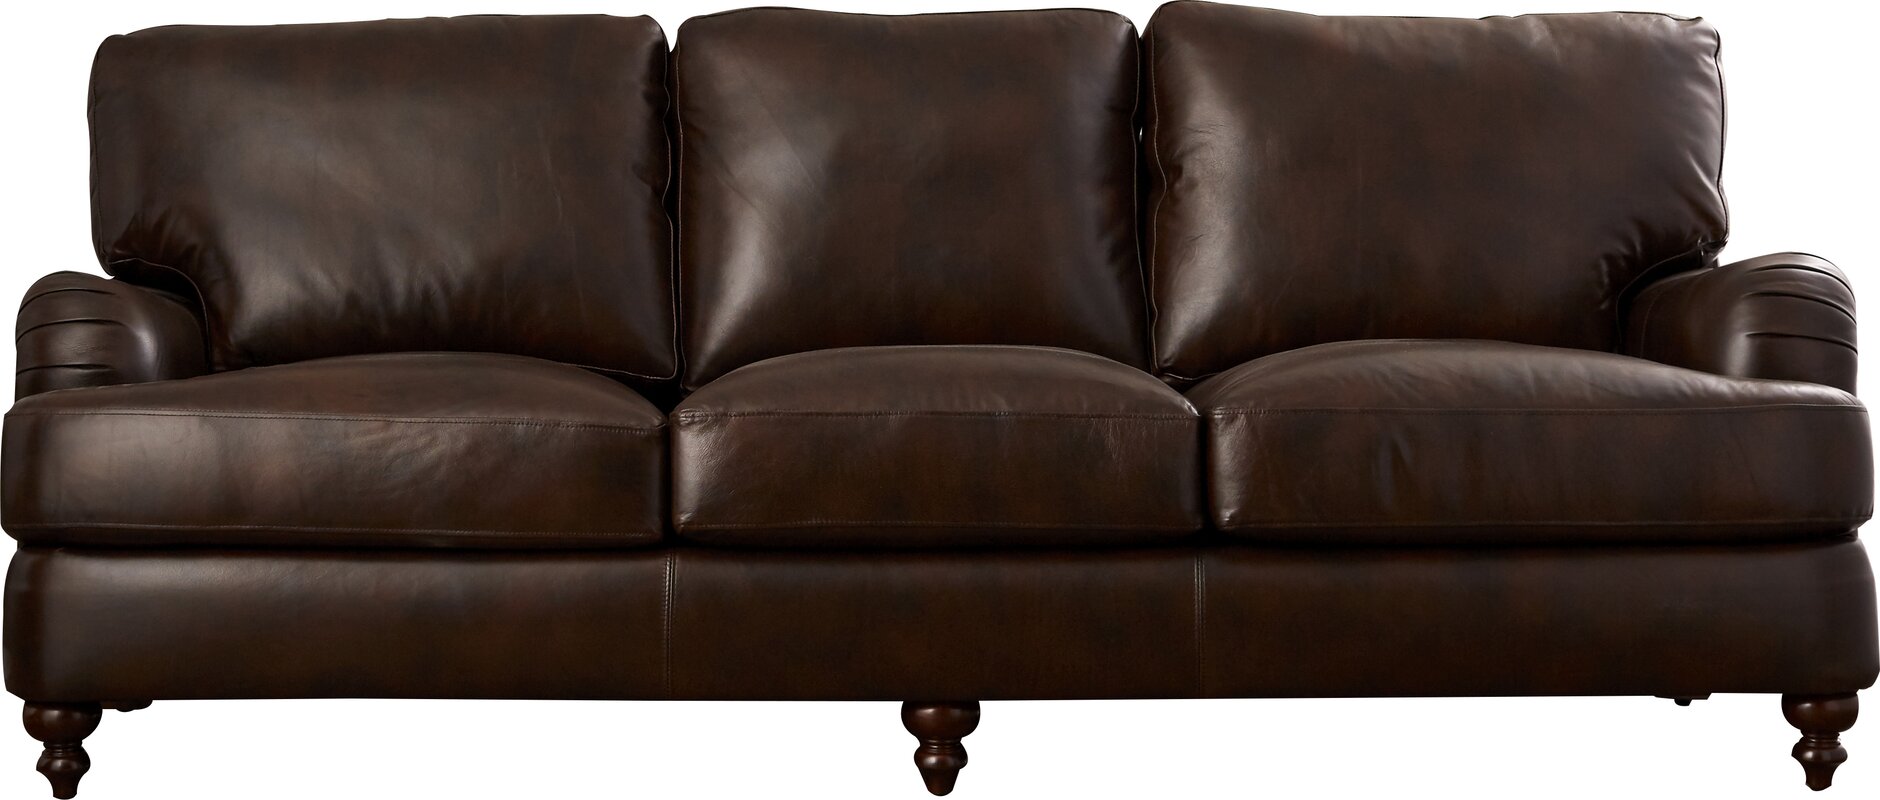 charles stewart leather sofa